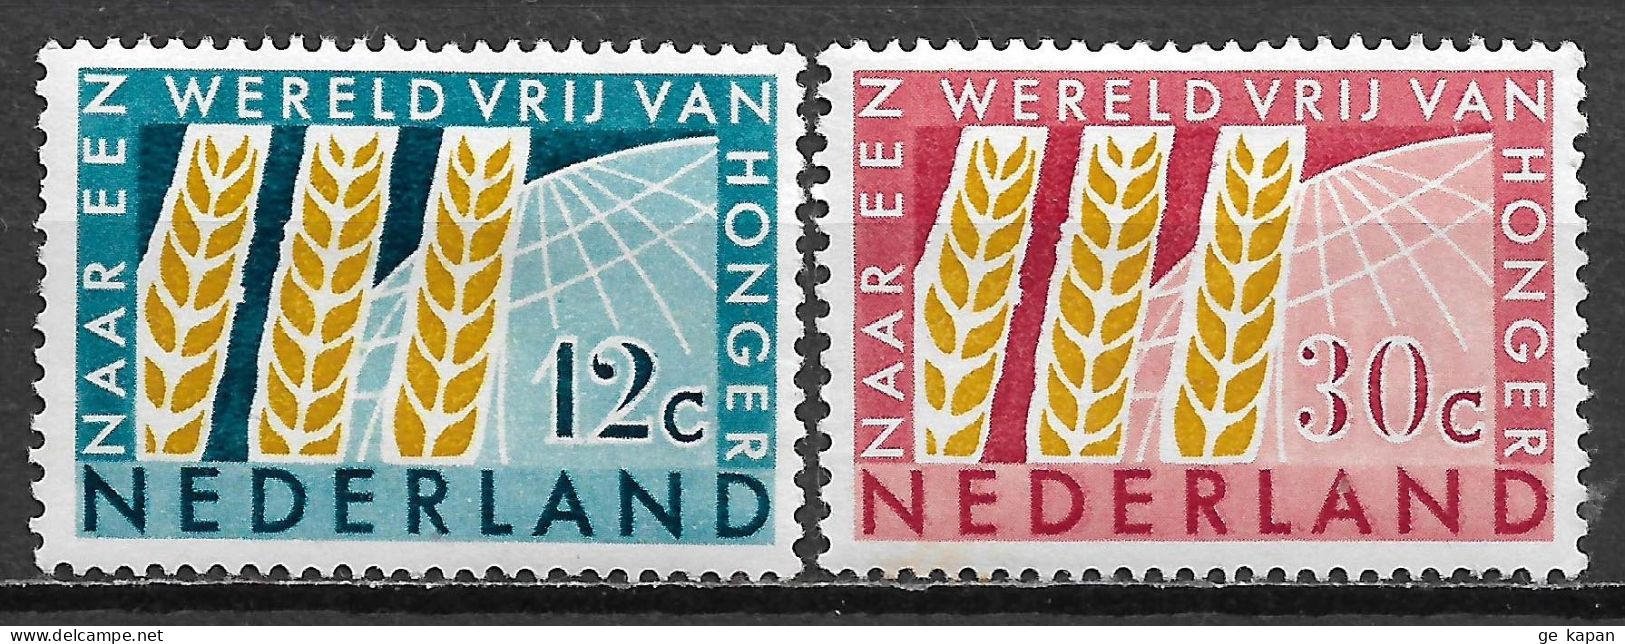 1963 NETHERLANDS Complete Set Of 2 MVLH STAMPS (Michel # 791,792) CV €1.50 - Nuevos